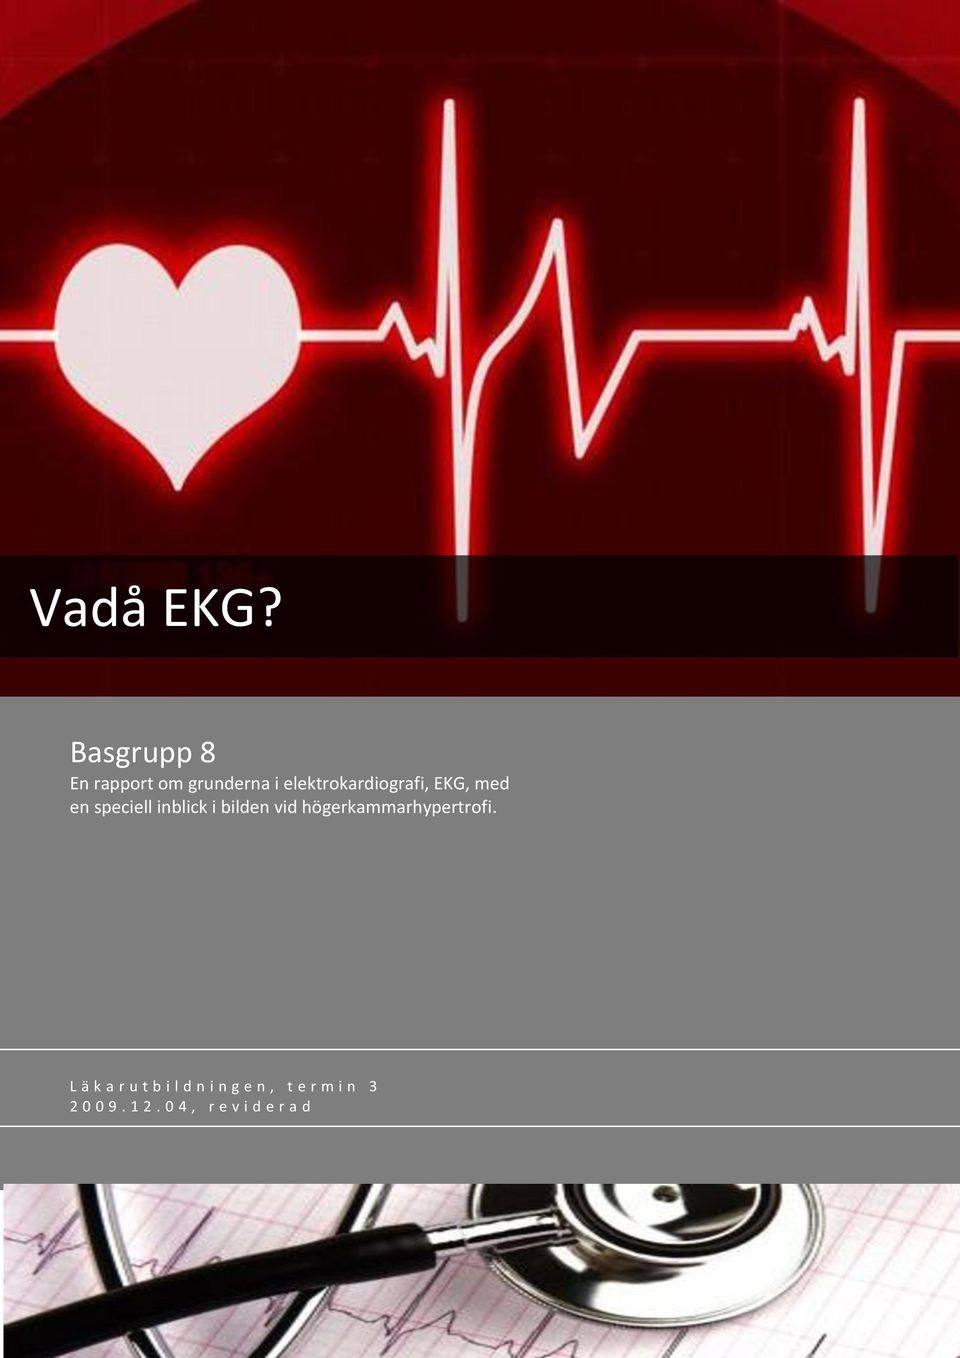 elektrokardiografi, EKG, med en speciell inblick i